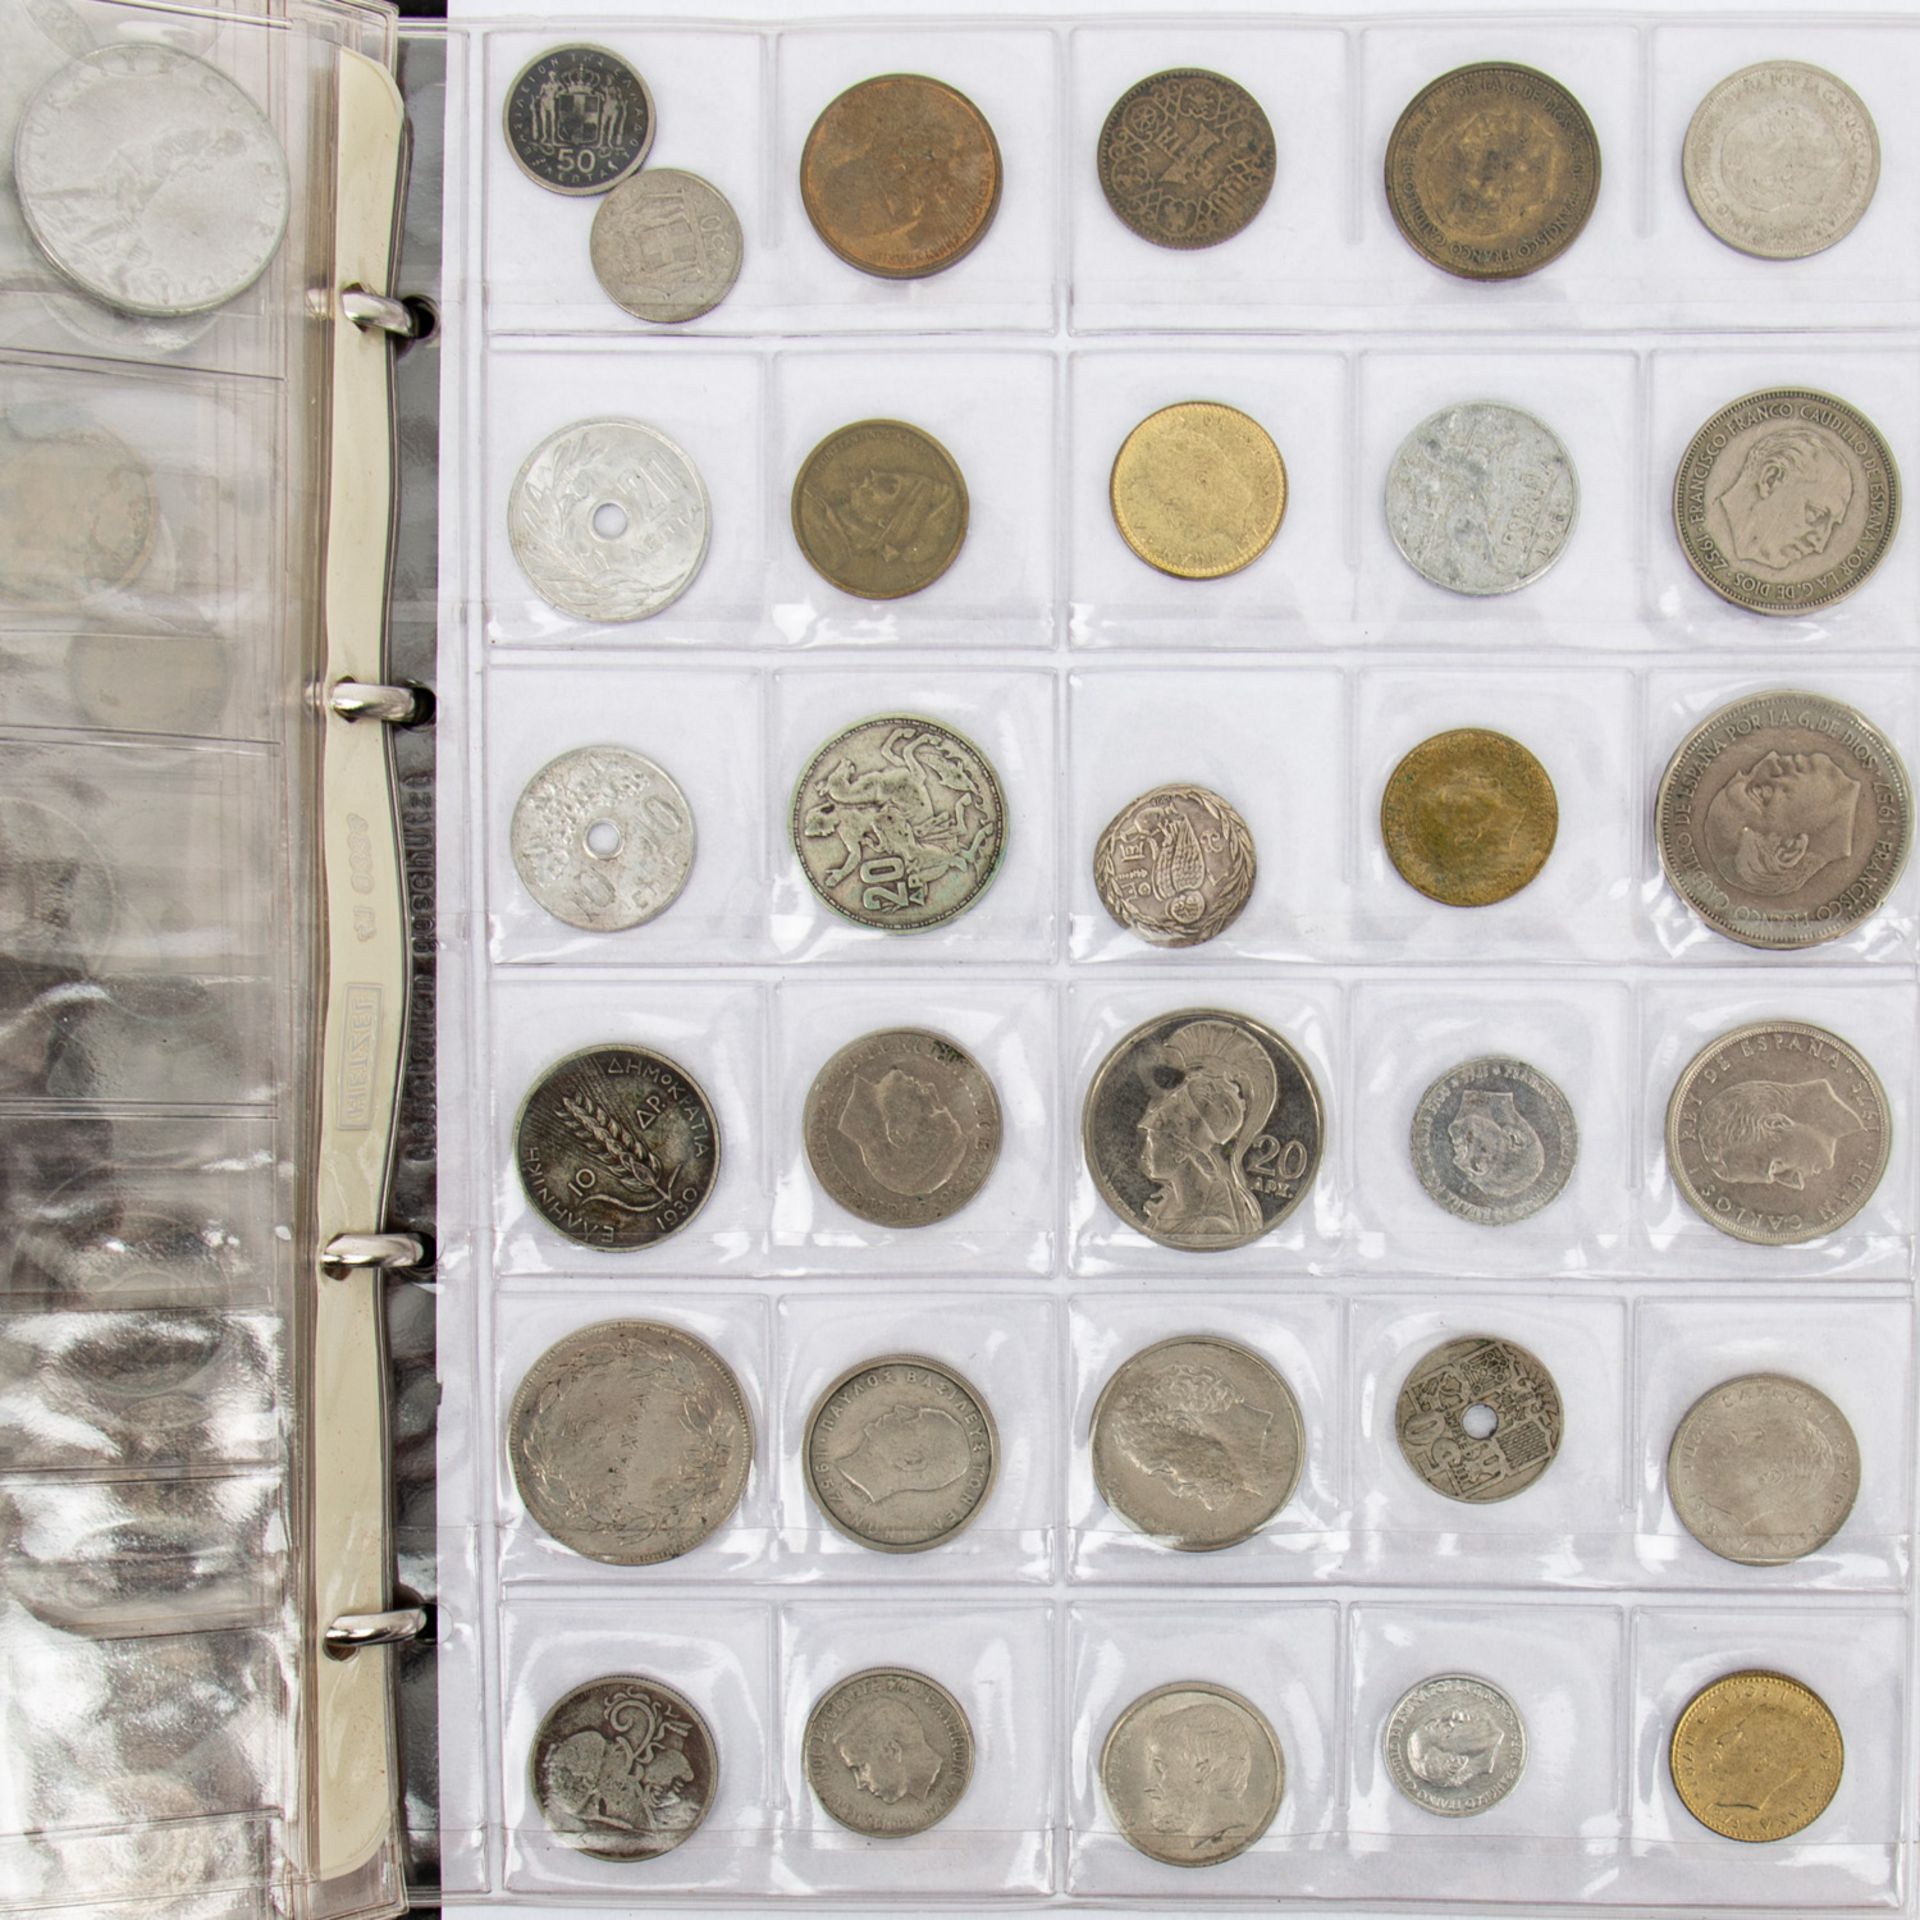 Münzenallerlei im Album,diverse Kursmünzen, Erhaltungen unterschiedlich, bitte anseh - Image 4 of 4